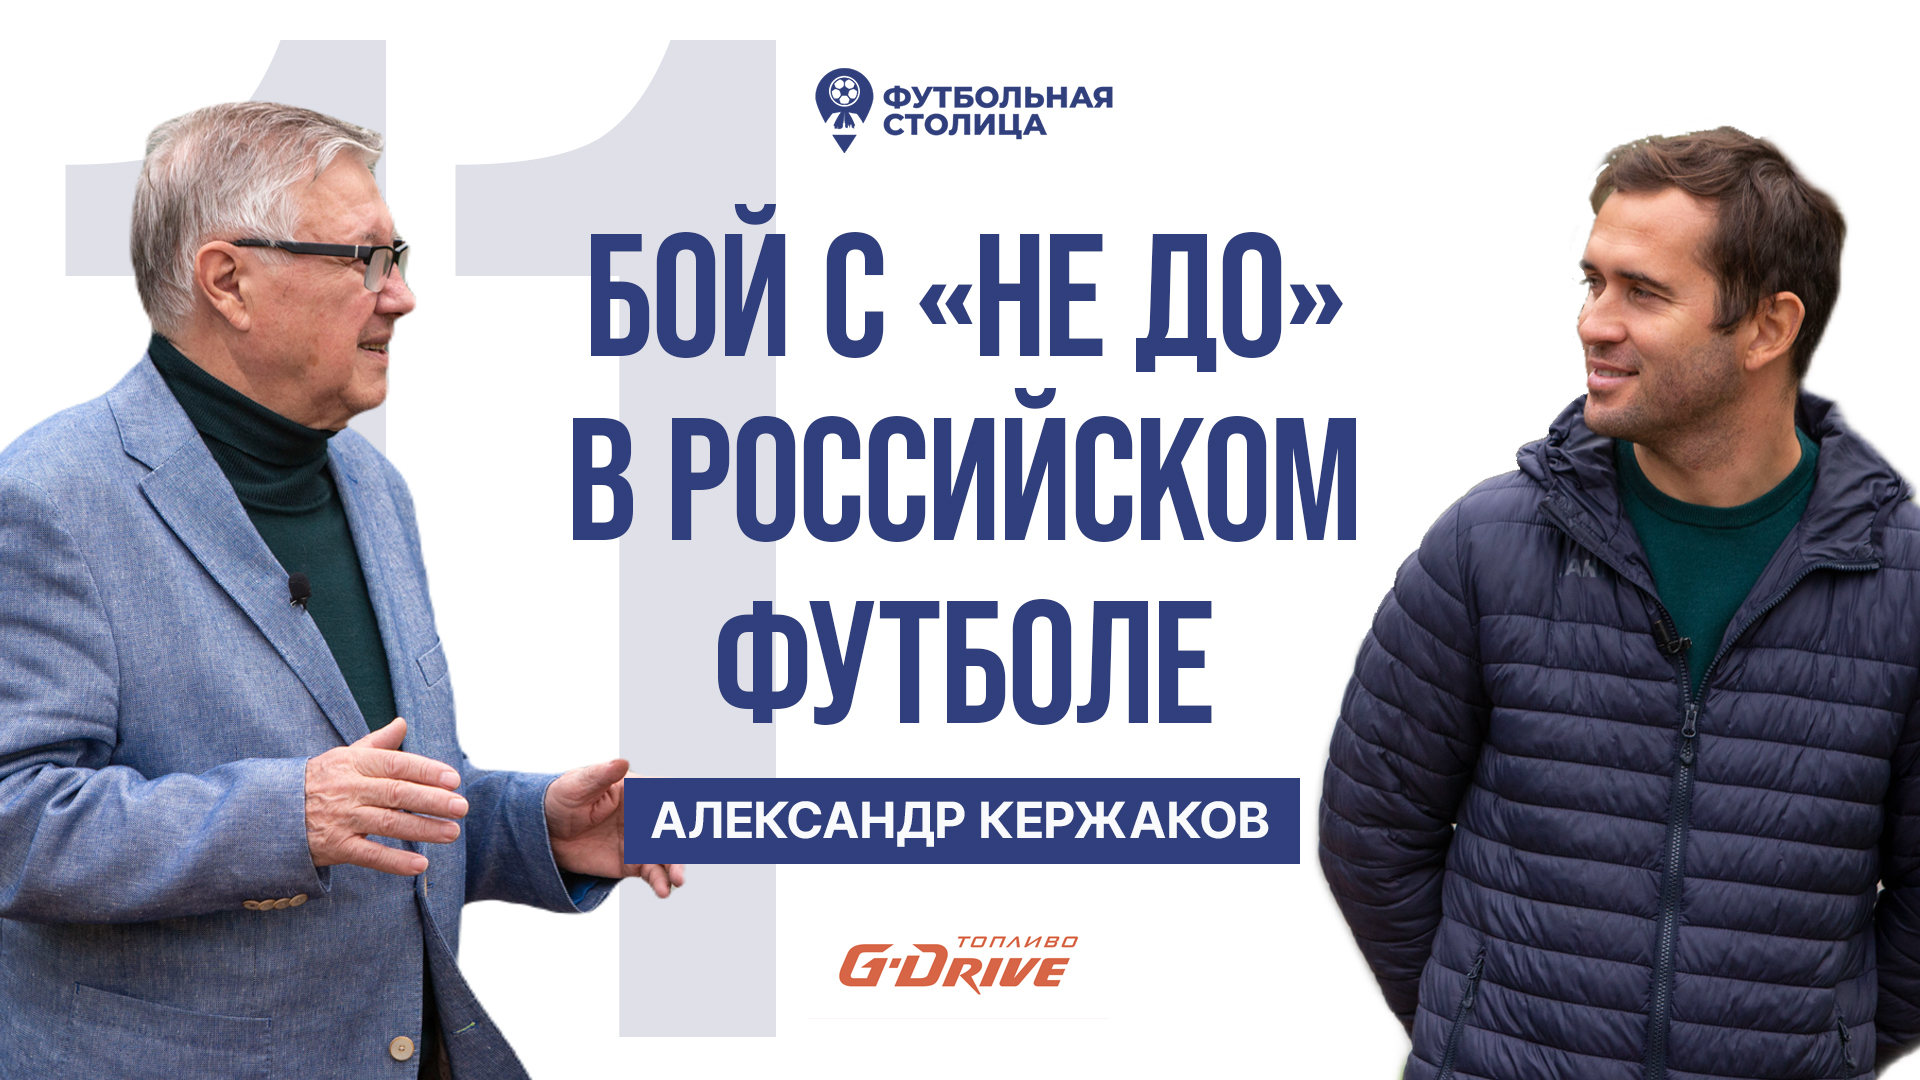 Александр Кержаков — партнёры, перспективы, «не до» как беда русского футбола